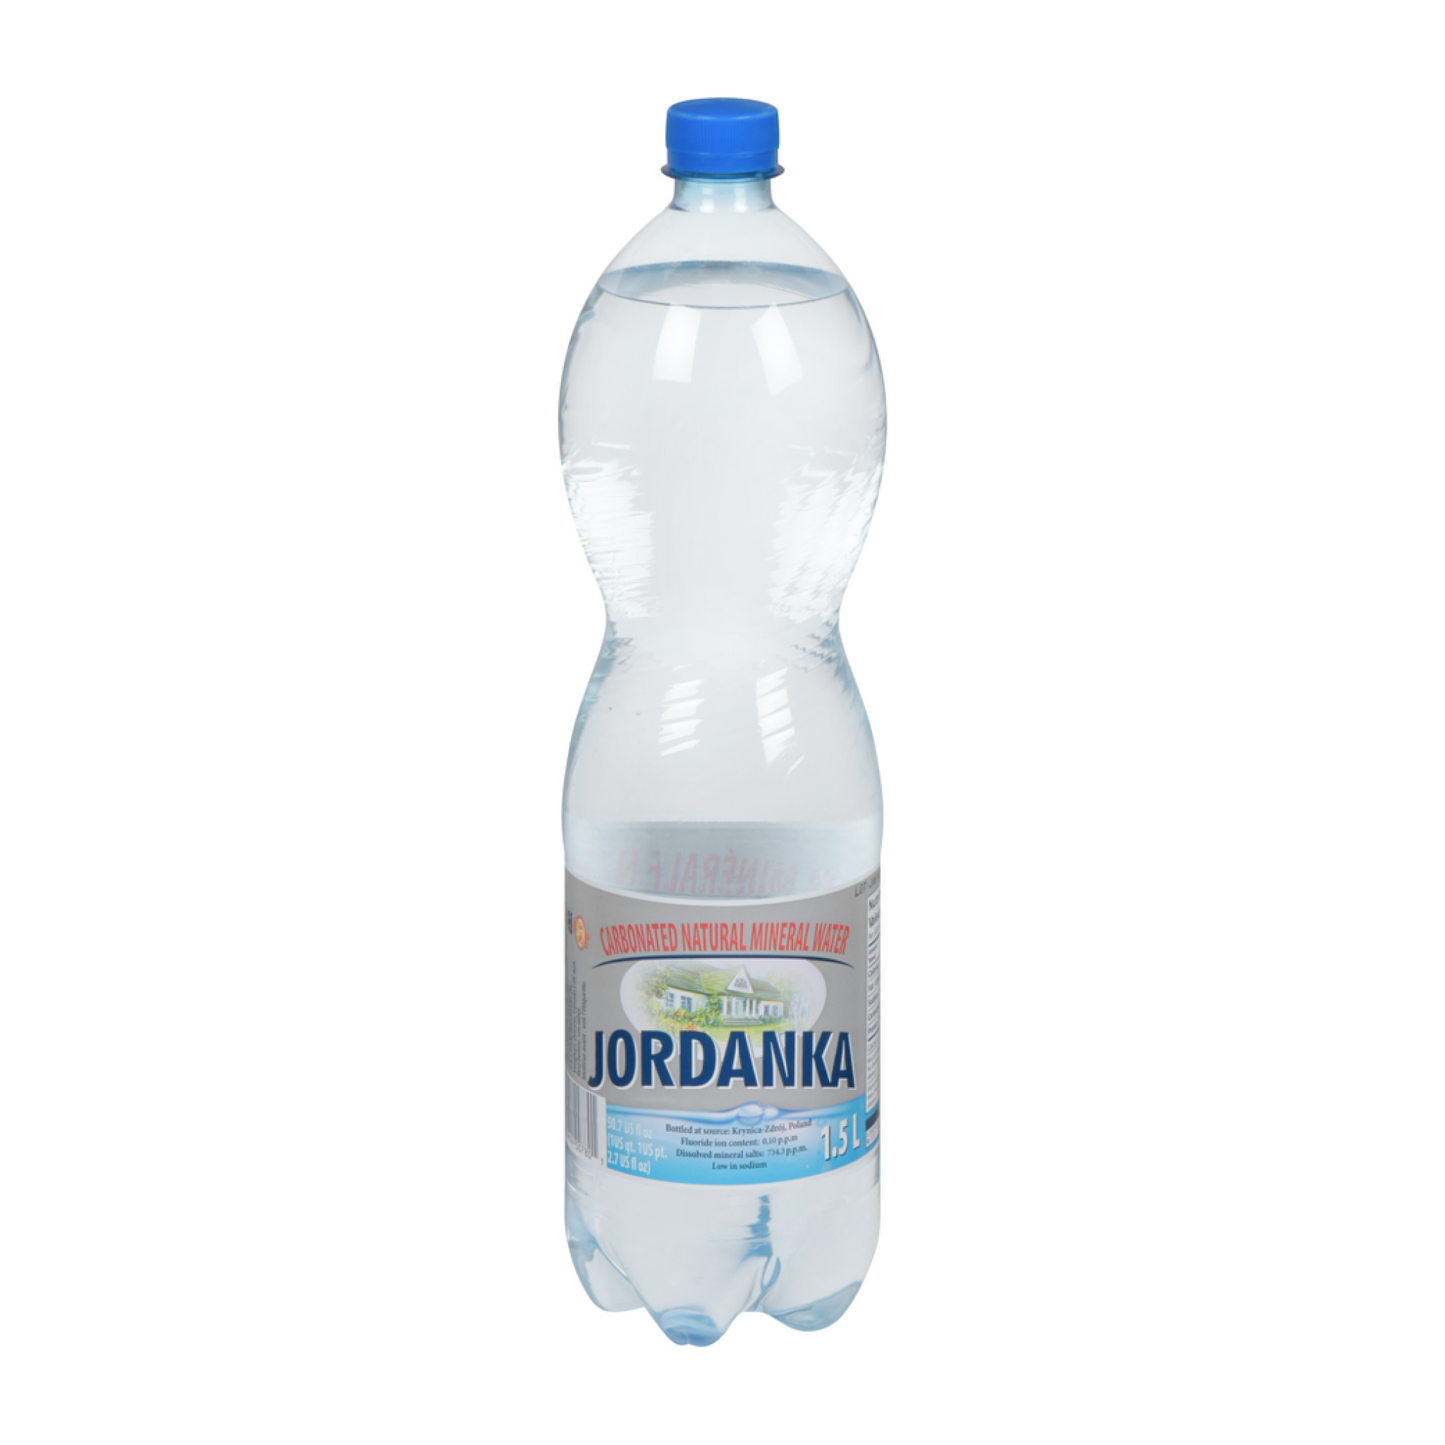 Jordanka Carbonated Natural Mineral Water 1.5L